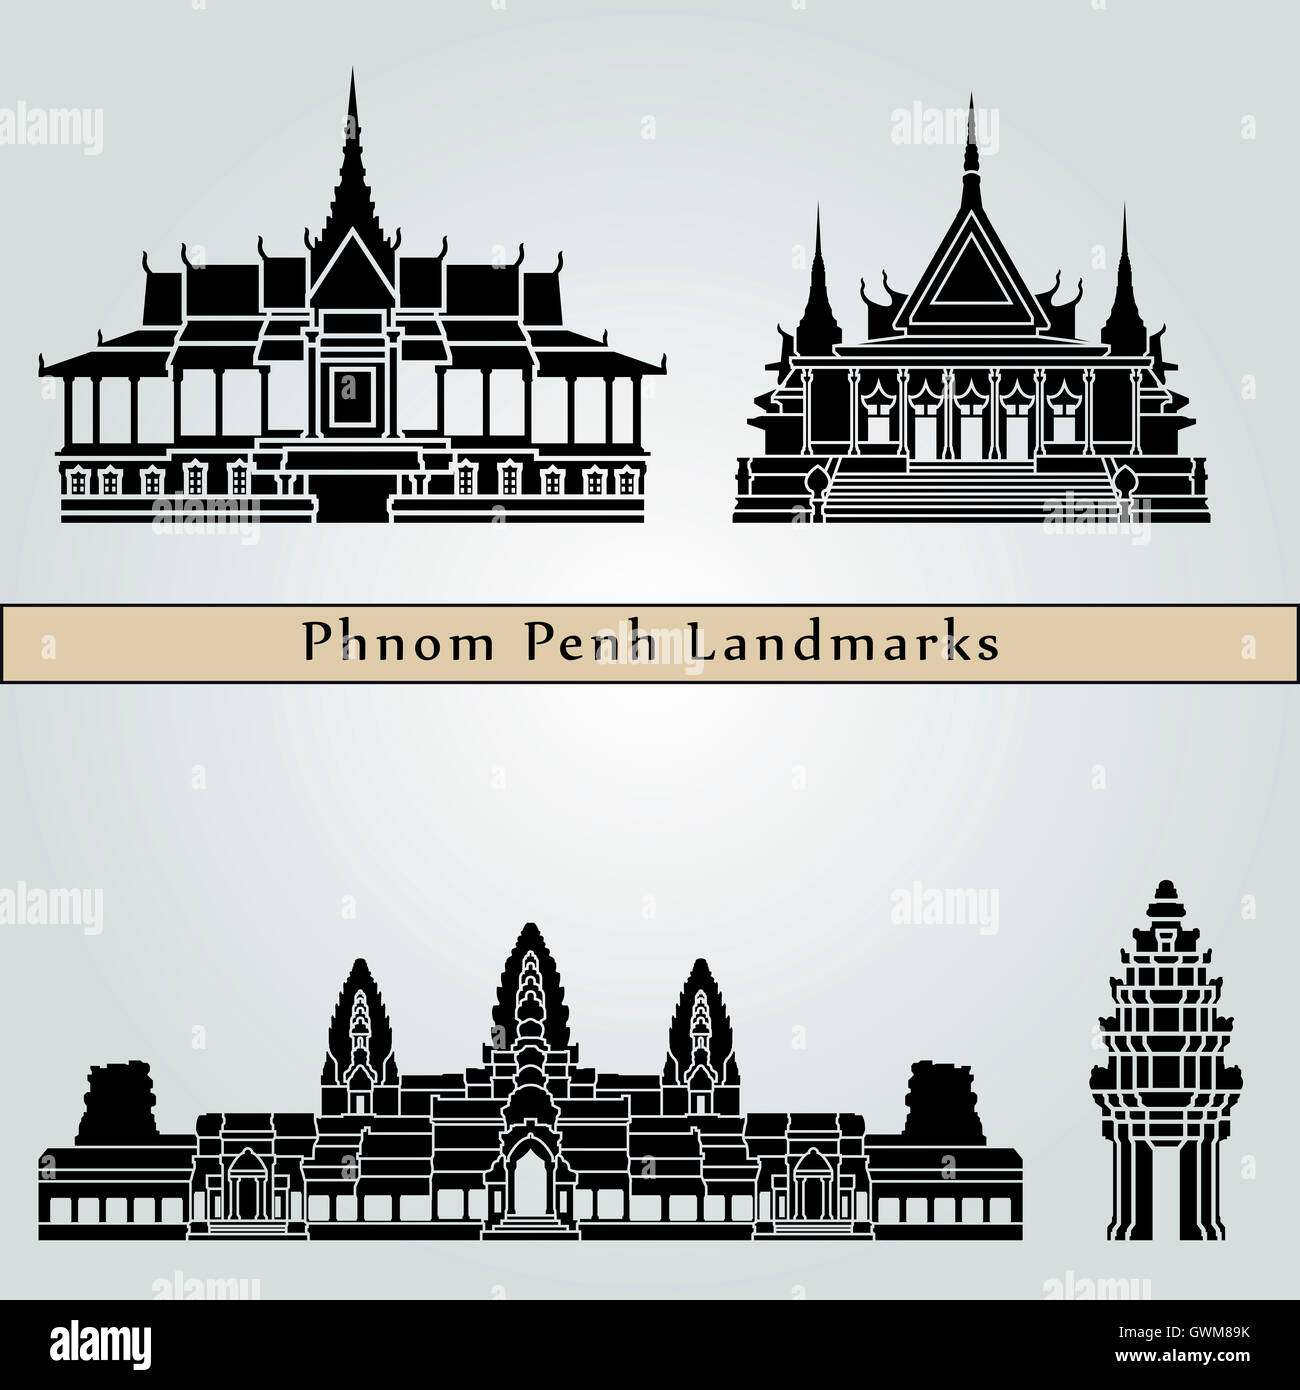 Les monuments de Phnom Penh isolé sur fond bleu dans le fichier vectoriel éditable Banque D'Images